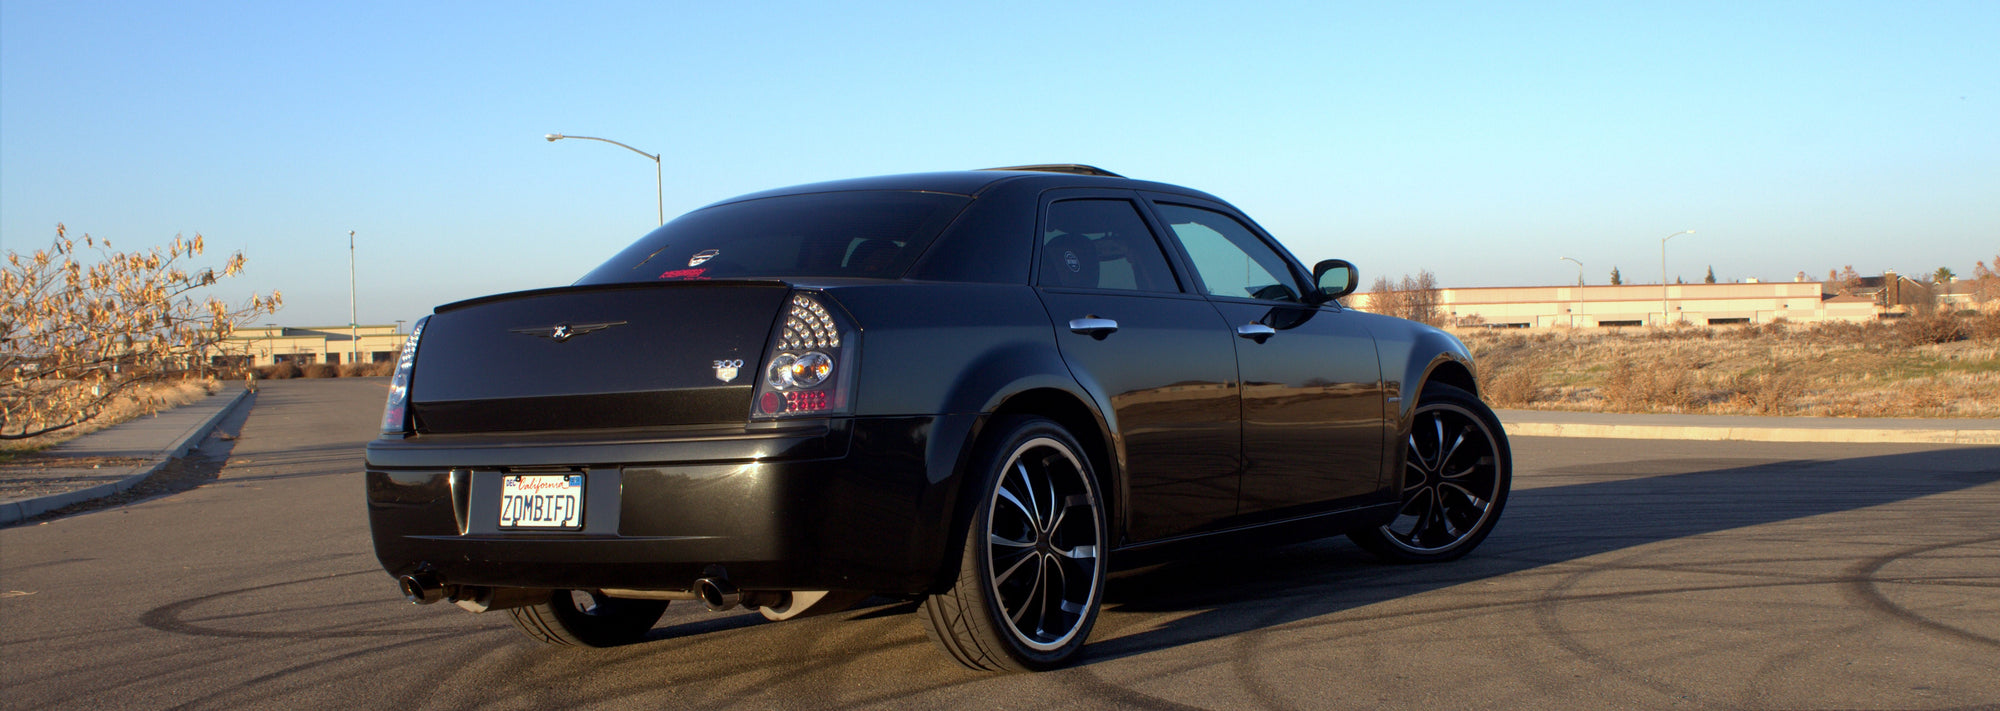 2006 Chrysler 300 6.1L V8